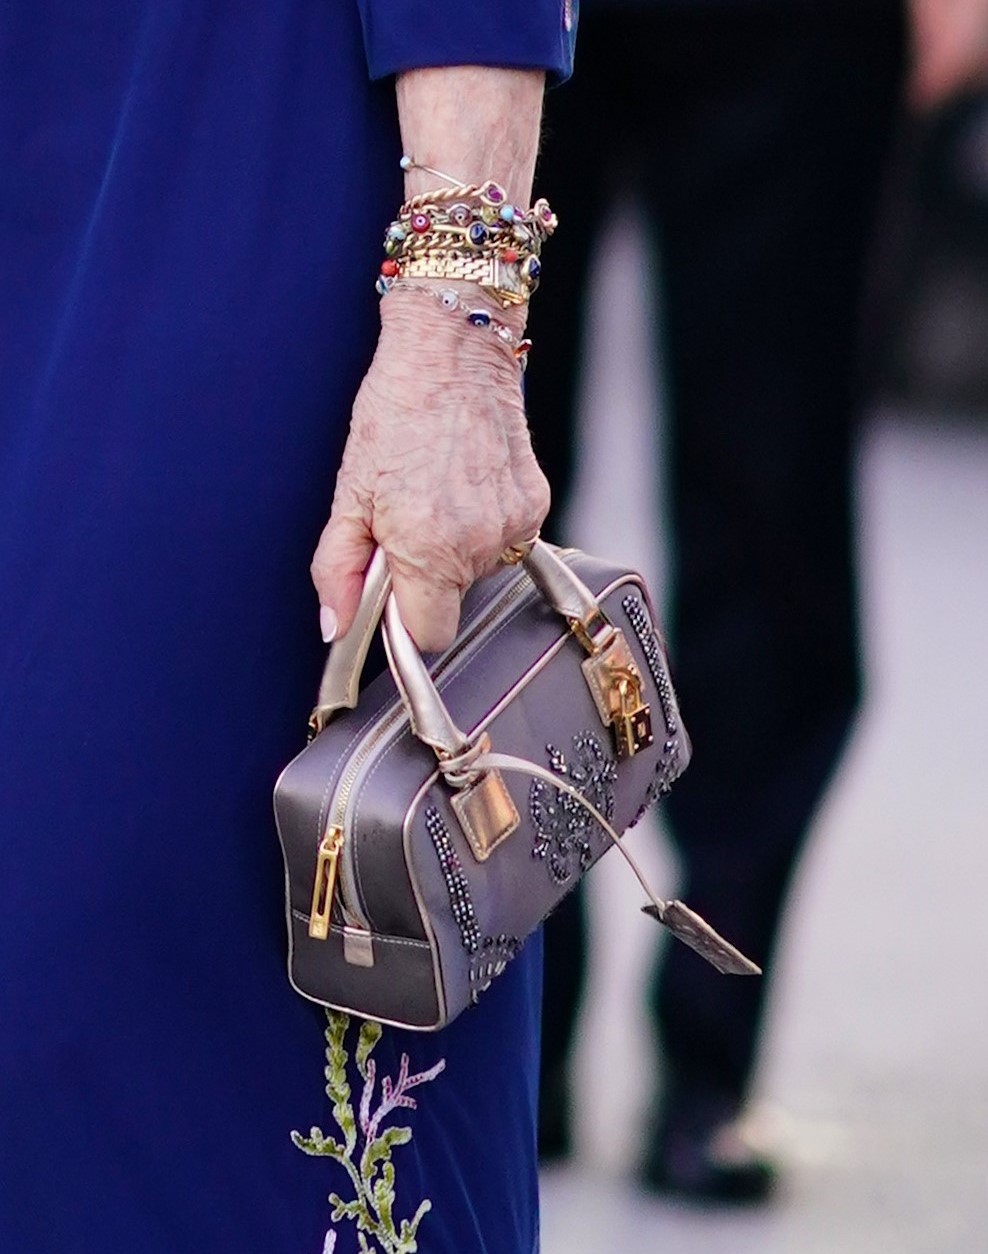 Detalle del bolso y las pulseras de la reina Sofía.